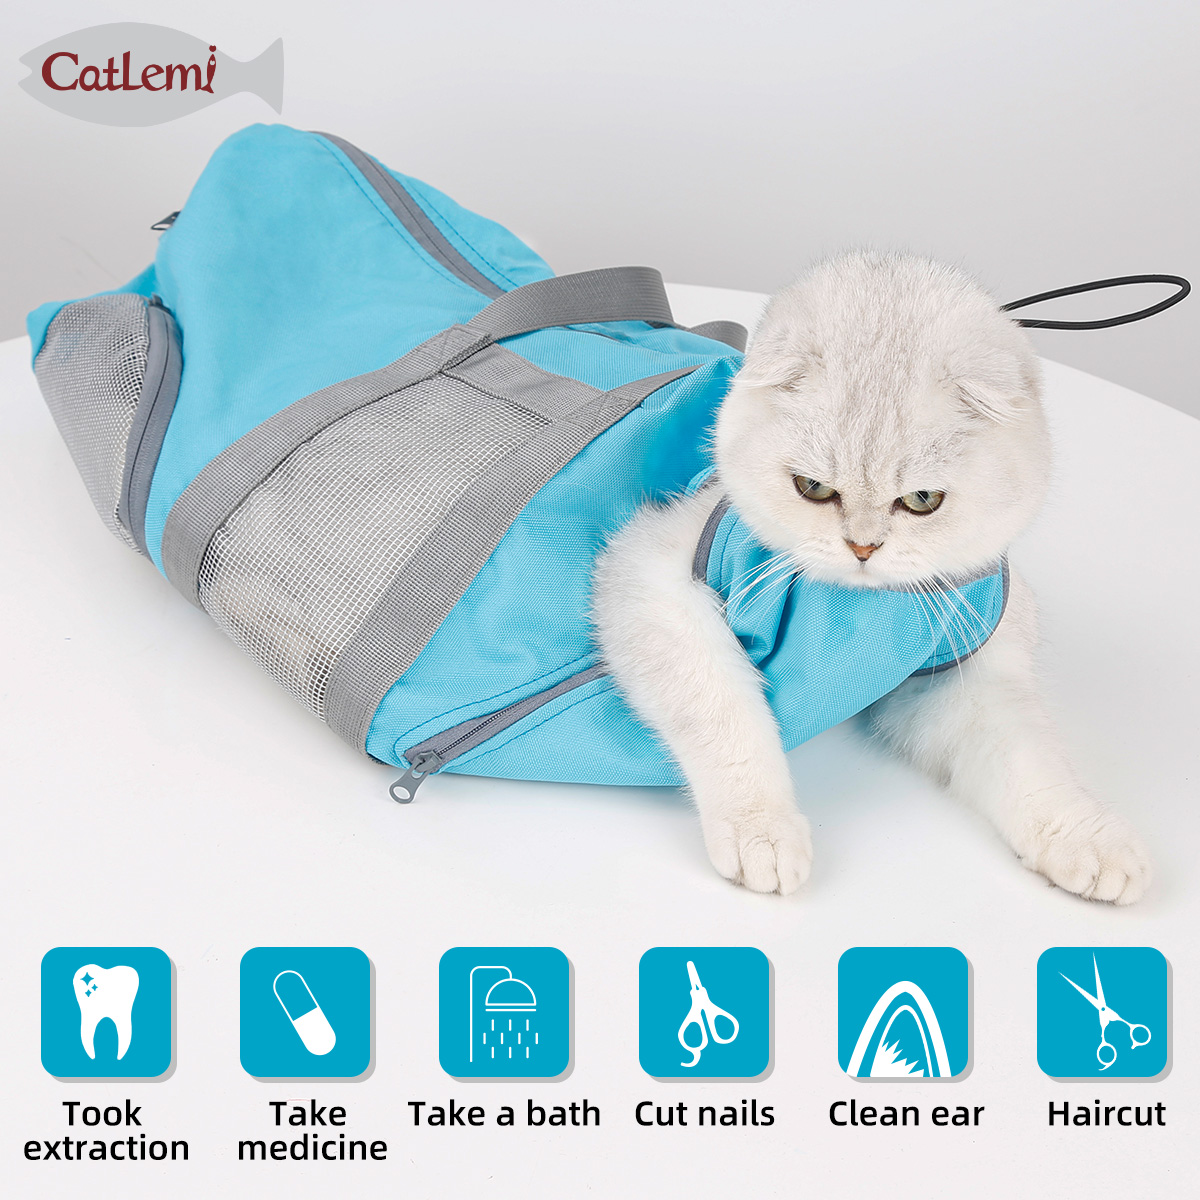 Multifunctional pet cat bag